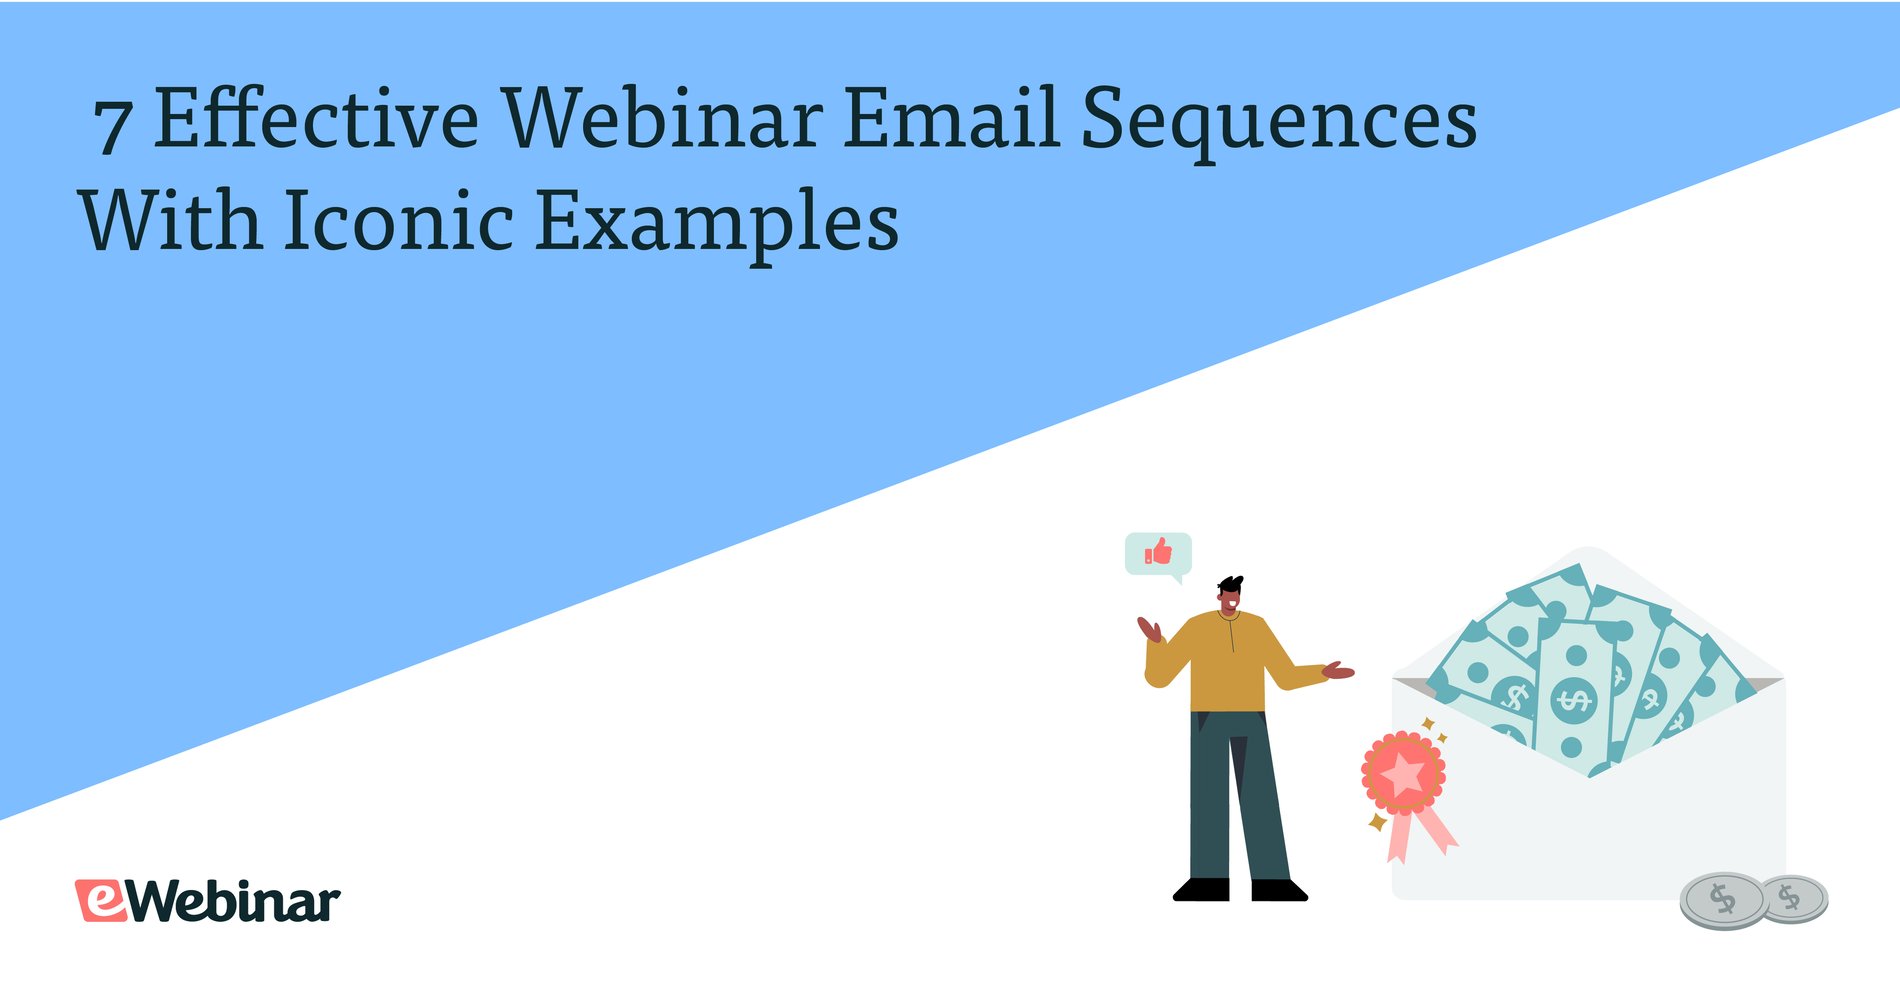 7 secuencias de correo electrónico eficaces para seminarios web con ejemplos icónicos